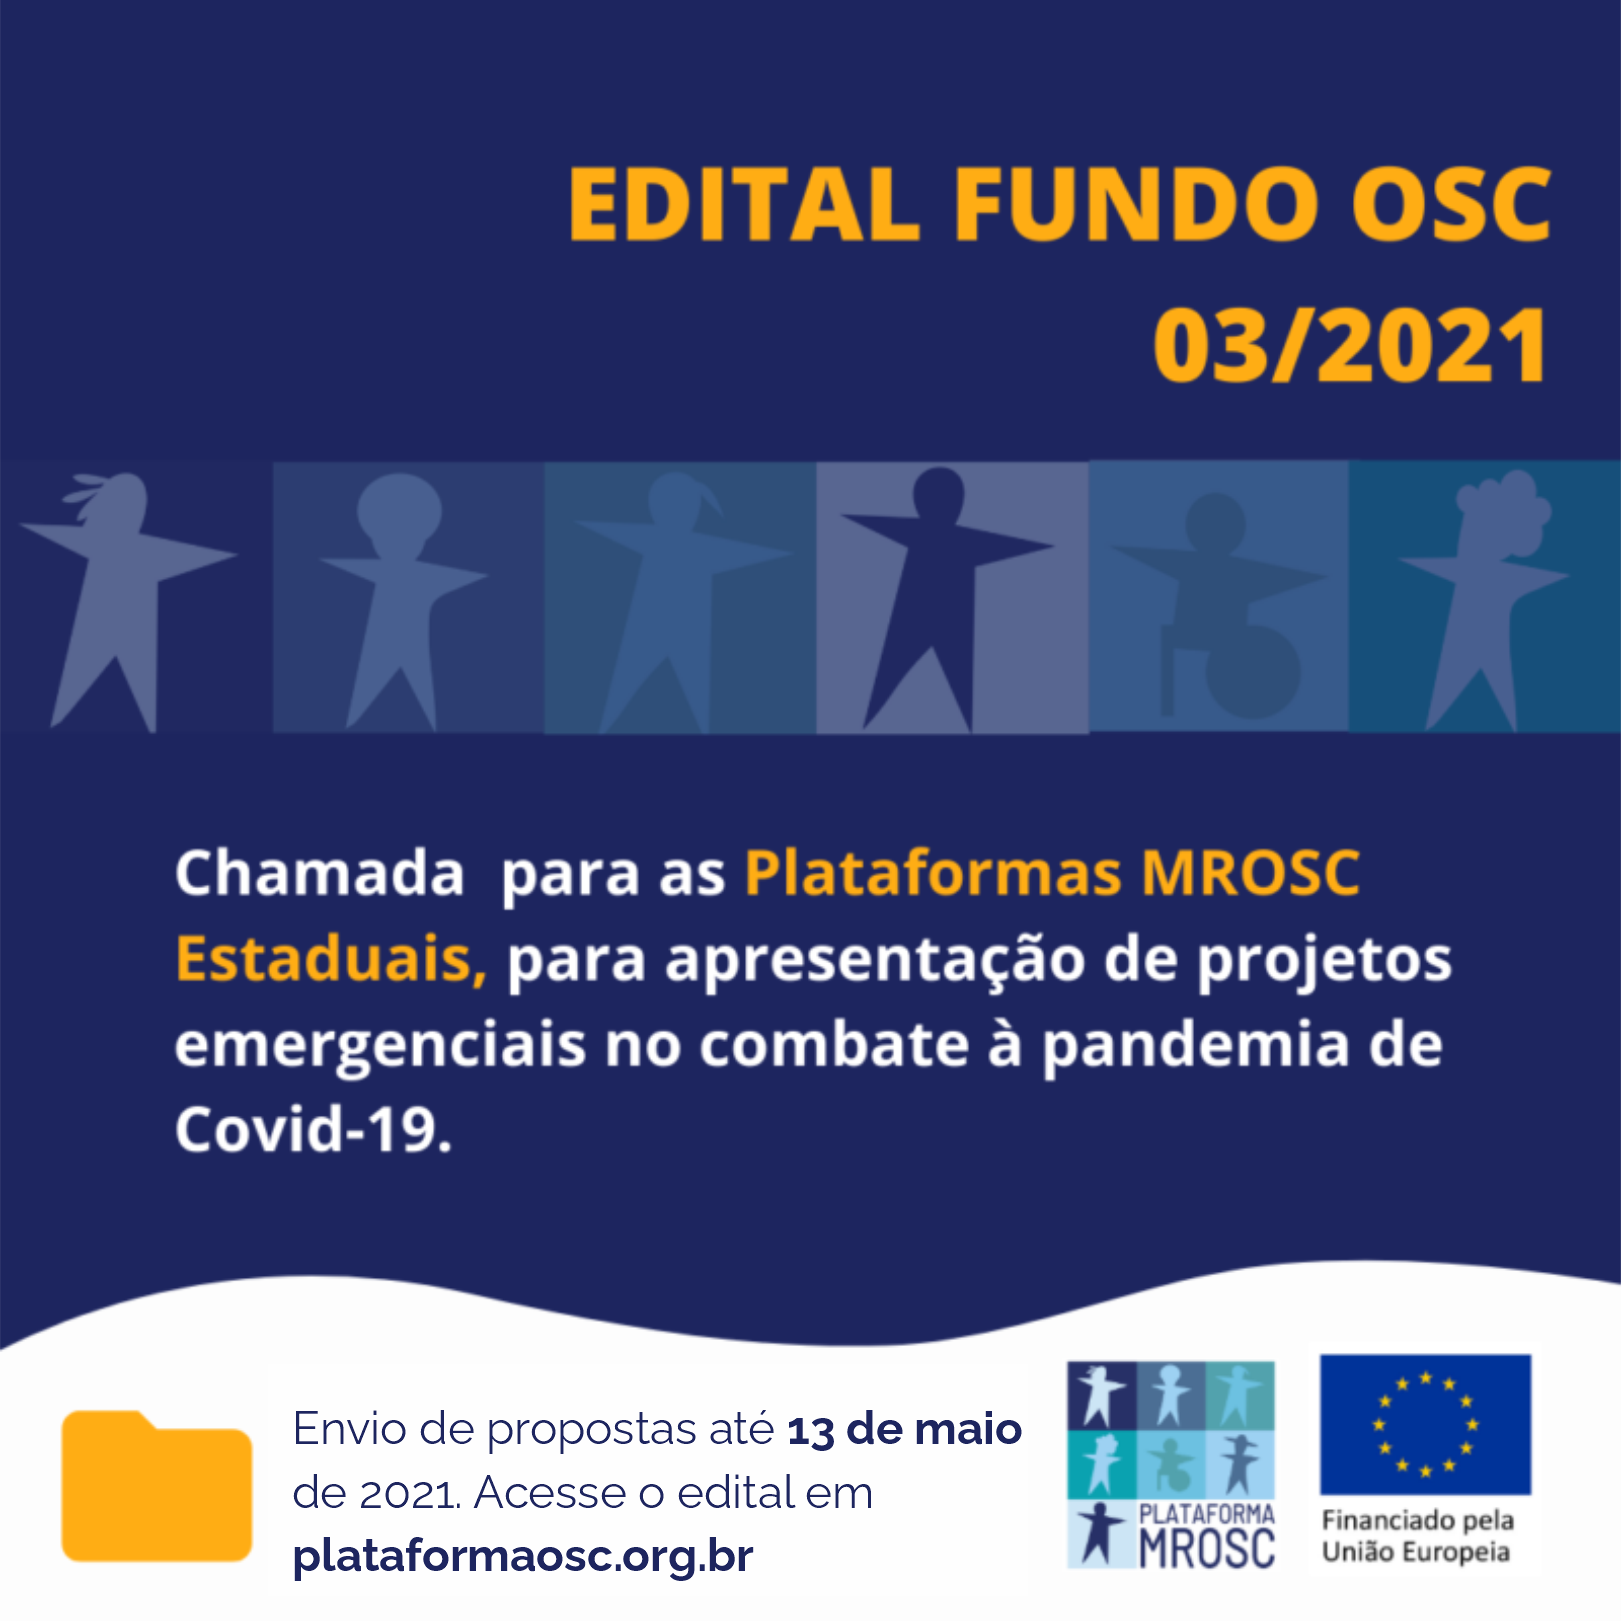 EDITAL FUNDO OSC 003/2021: Chamada para Plataformas MROSC Estaduais para apresentação de projetos emergenciais no combate à pandemia